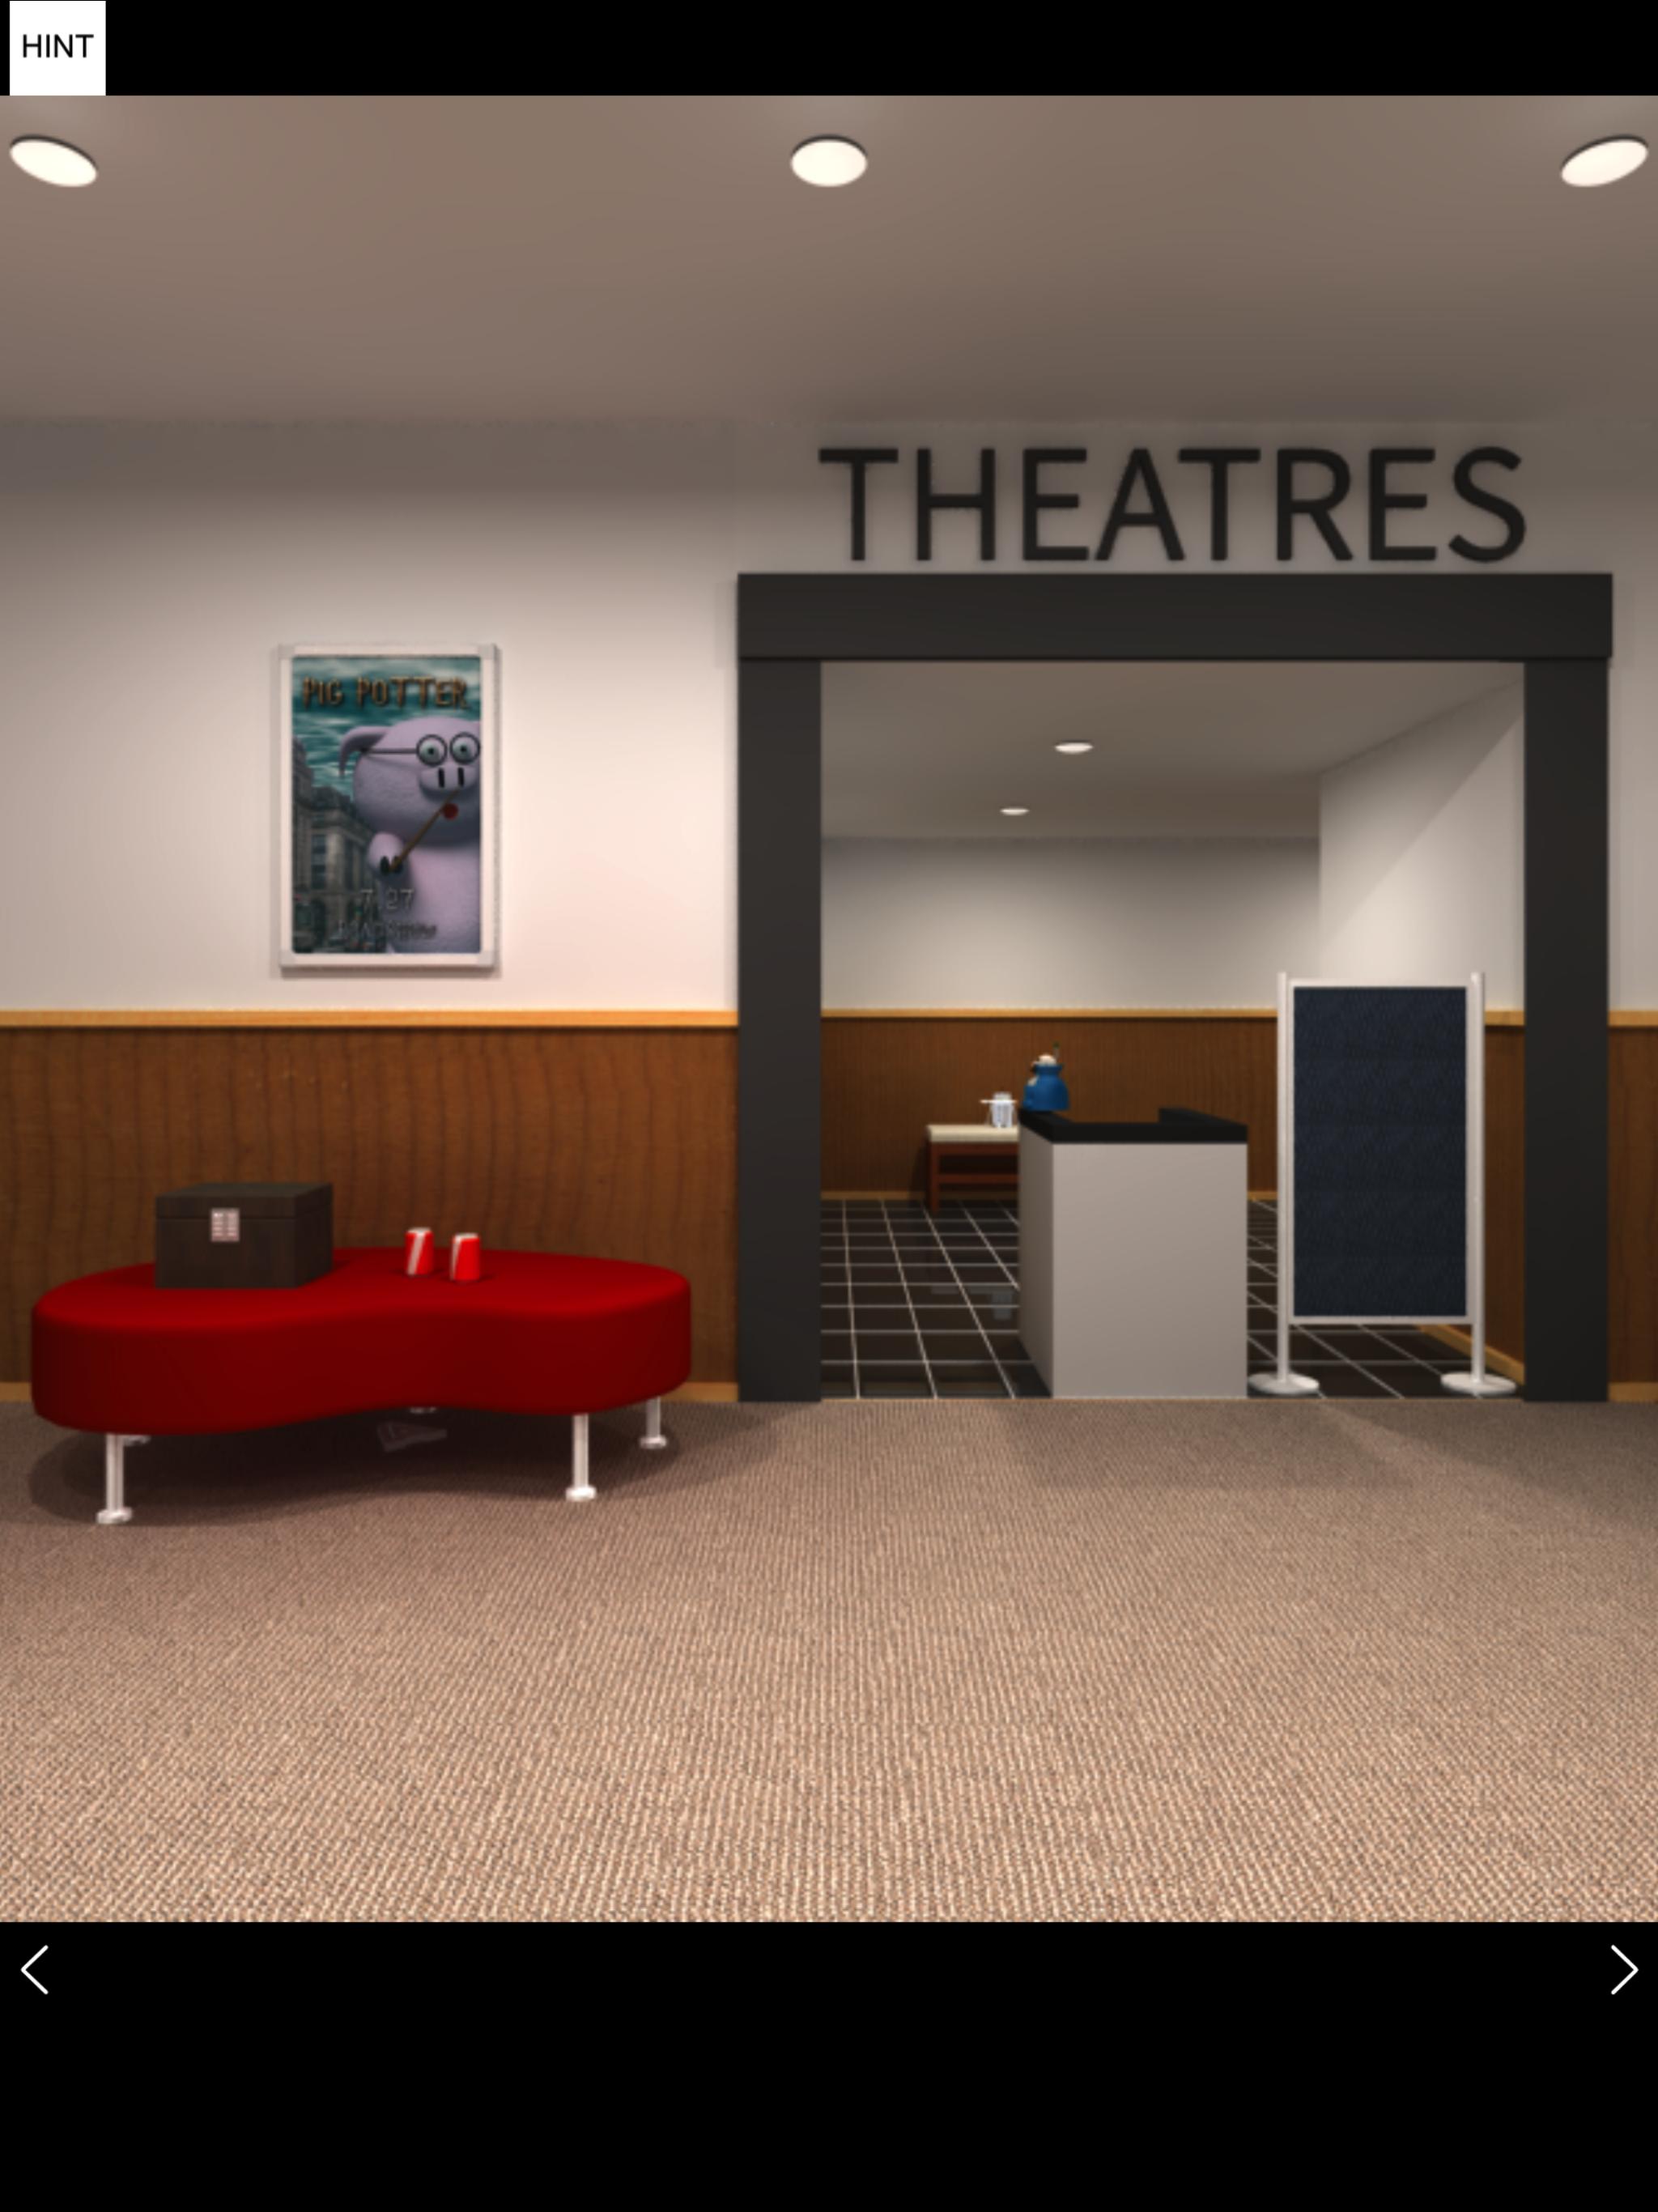 Escape Game Theater For Android Apk Download - escape room roblox theater escape